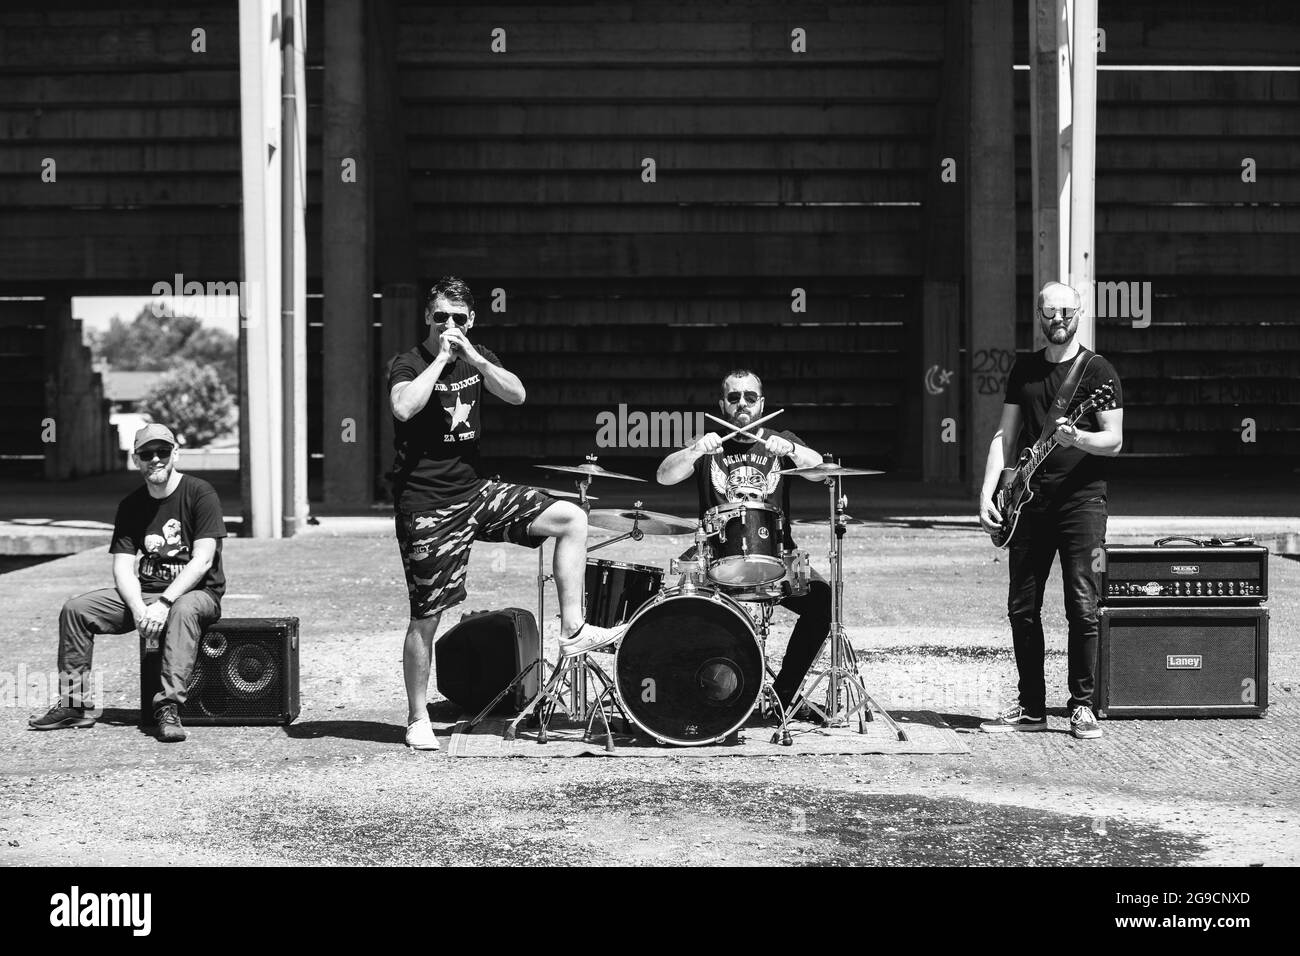 BRCKO, BOSNIEN UND HERZEGOWINA - 26. Jun 2020: Eine monochrome Aufnahme einer Rockband, die an einem heißen Sommertag im Freien auftrat. Stockfoto